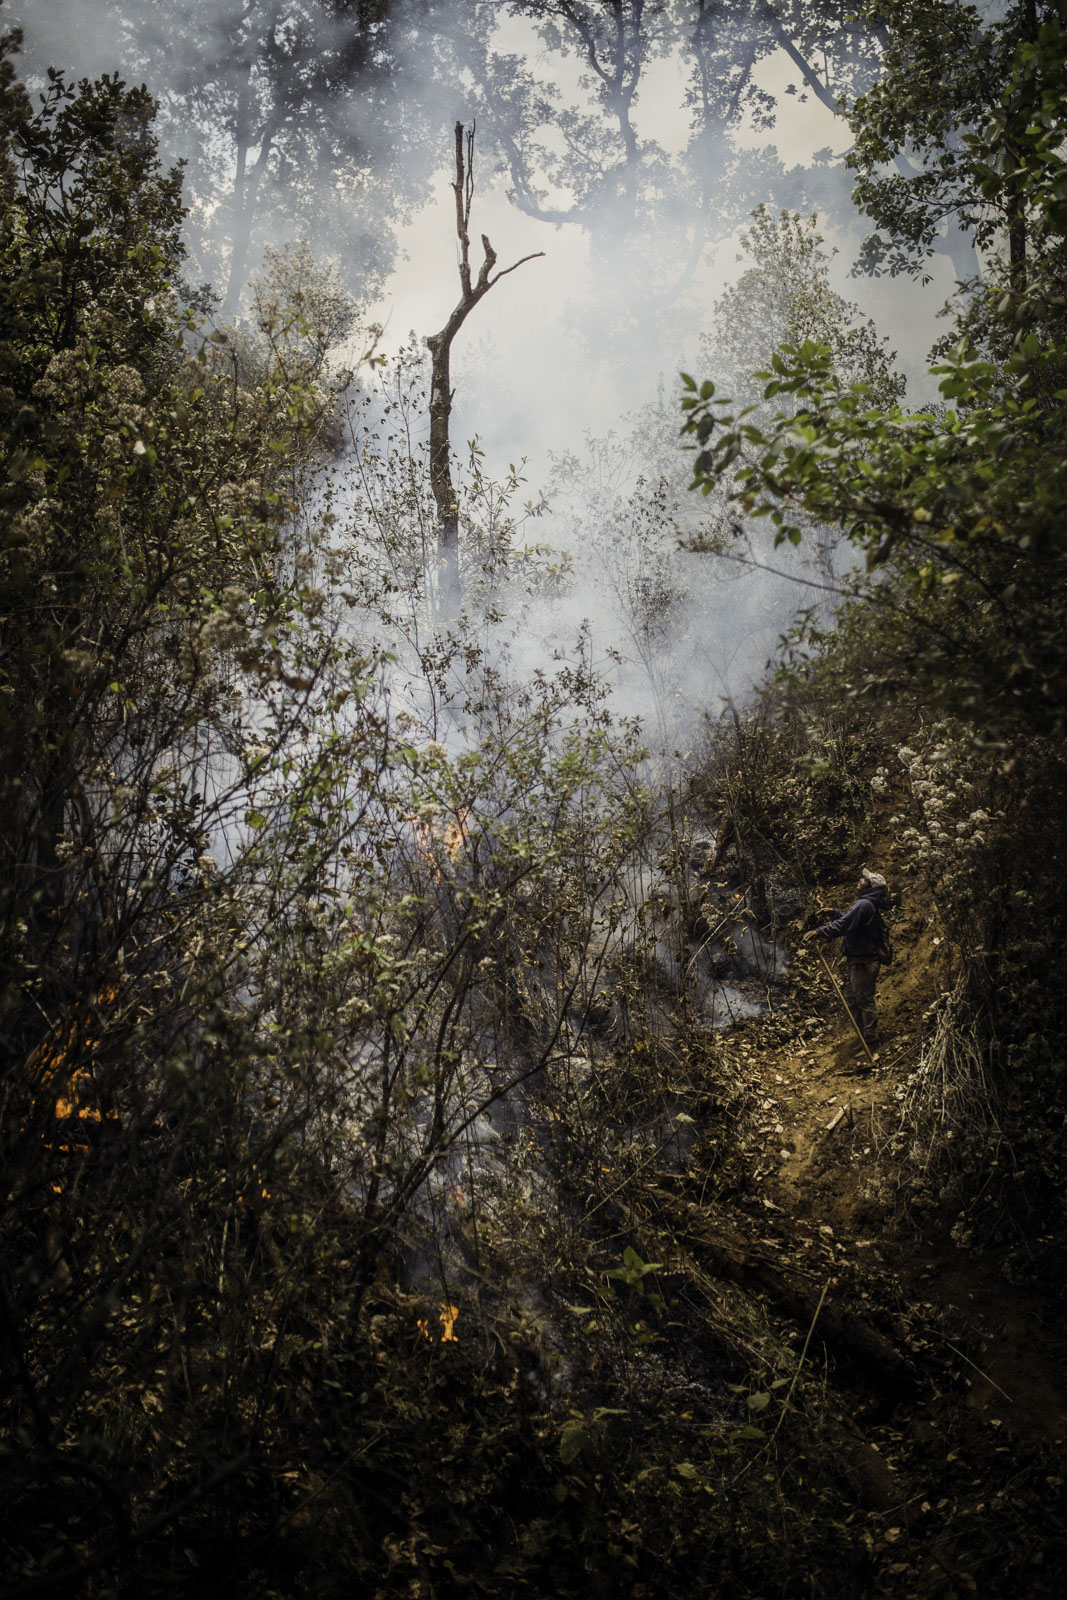 Freiwillige Helfer in Cheran helfen, einen Waldbrand zu löschen. Benachbarte Gemeinden legen die Brände absichtlich, um ihre Avocado-Plantagen zu Plantagen zu erweitern. Unkontrolliert greifen die Brände auf die umliegenden Gebiete über.13.04.2021 Cheran Mexiko © 2021 Axel Javier Sulzbacher